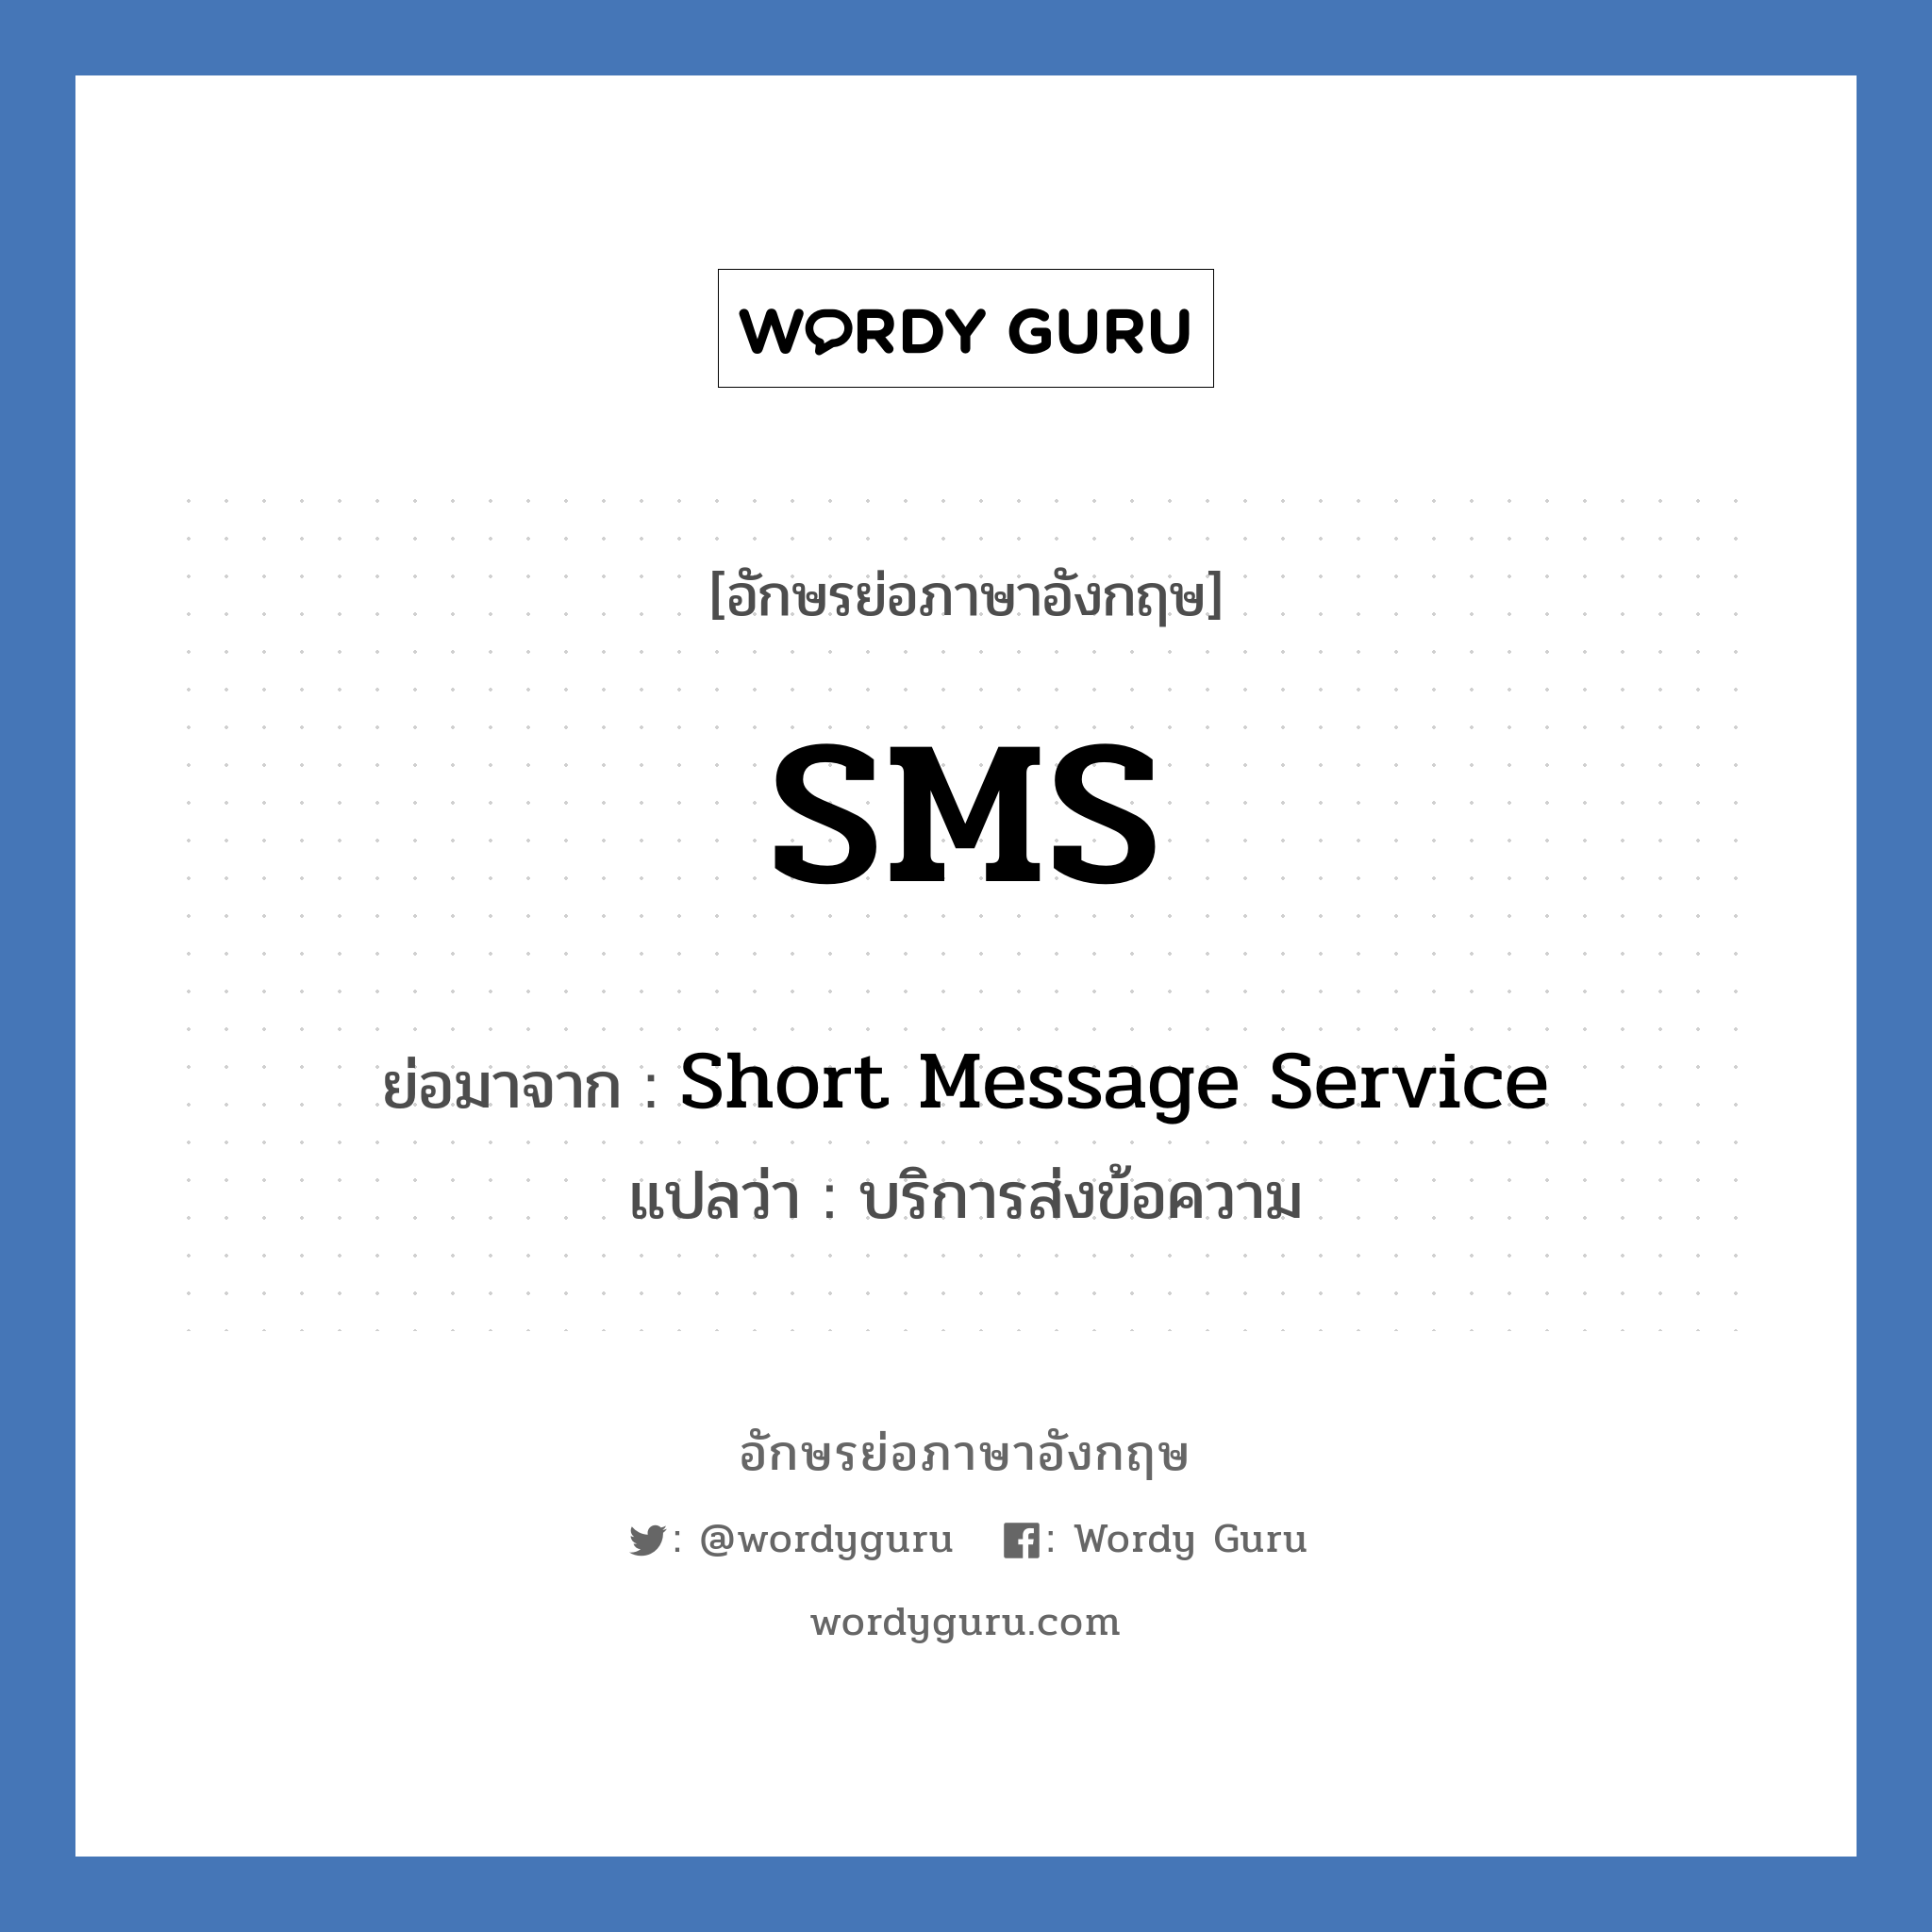 SMS ย่อมาจาก? แปลว่า?, อักษรย่อภาษาอังกฤษ SMS ย่อมาจาก Short Message Service แปลว่า บริการส่งข้อความ